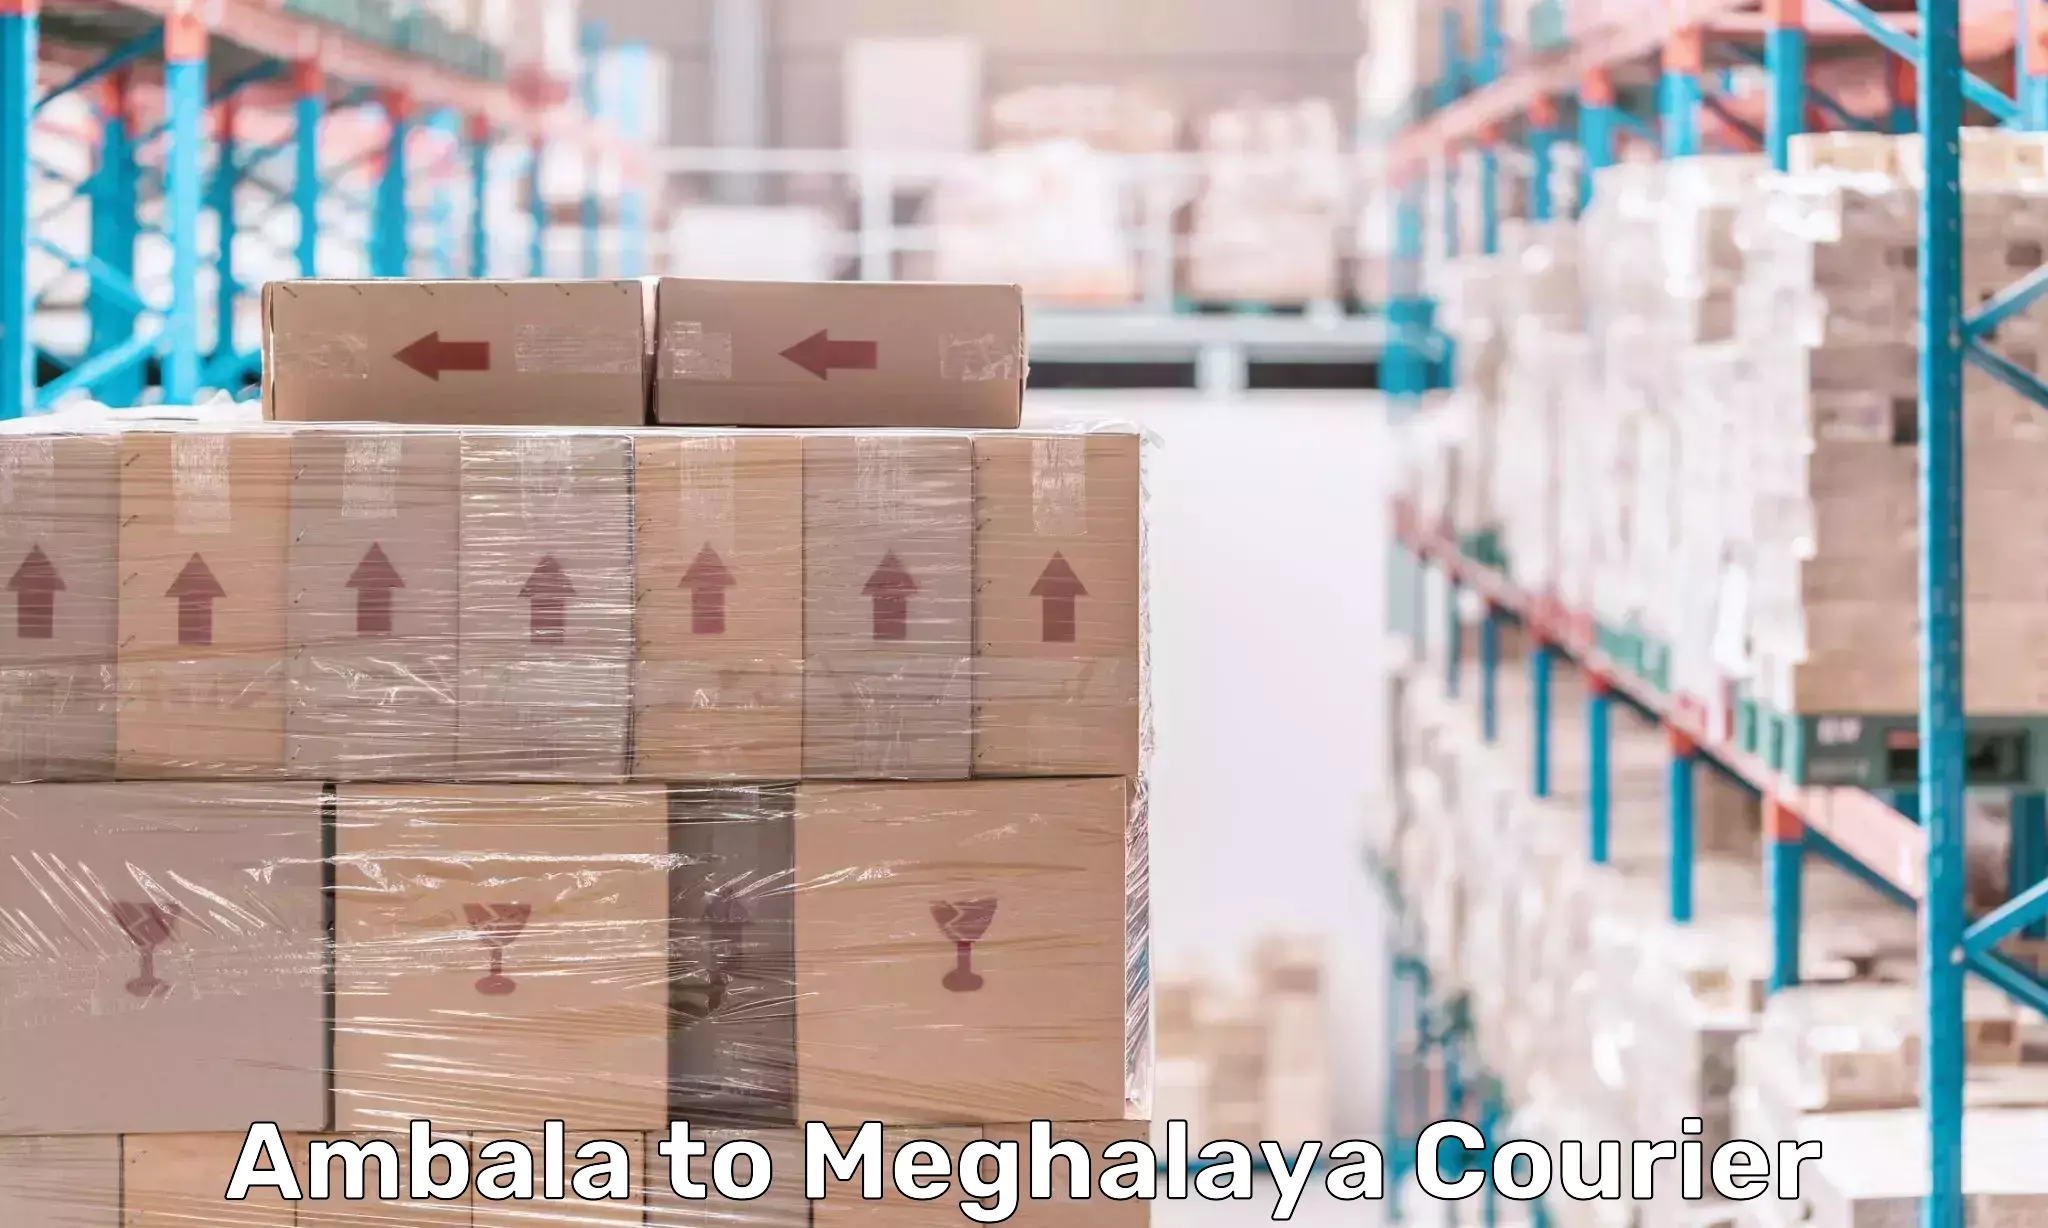 Logistics service provider Ambala to Meghalaya